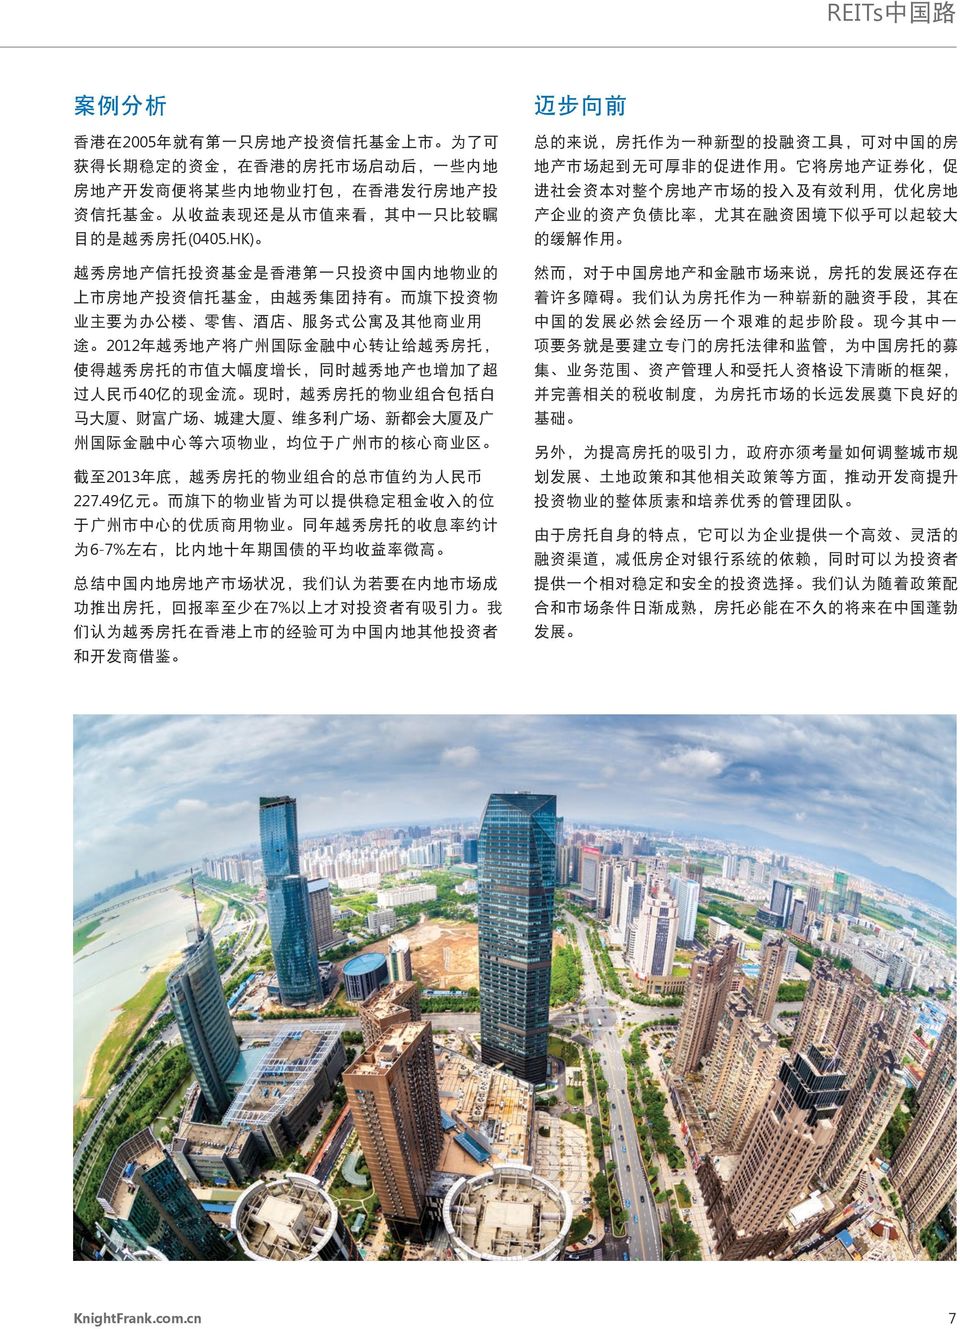 HK) 越 秀 房 地 产 信 托 投 资 基 金 是 香 港 第 一 只 投 资 中 国 内 地 物 业 的 上 市 房 地 产 投 资 信 托 基 金, 由 越 秀 集 团 持 有 而 旗 下 投 资 物 业 主 要 为 办 公 楼 零 售 酒 店 服 务 式 公 寓 及 其 他 商 业 用 途 2012 年 越 秀 地 产 将 广 州 国 际 金 融 中 心 转 让 给 越 秀 房 托,